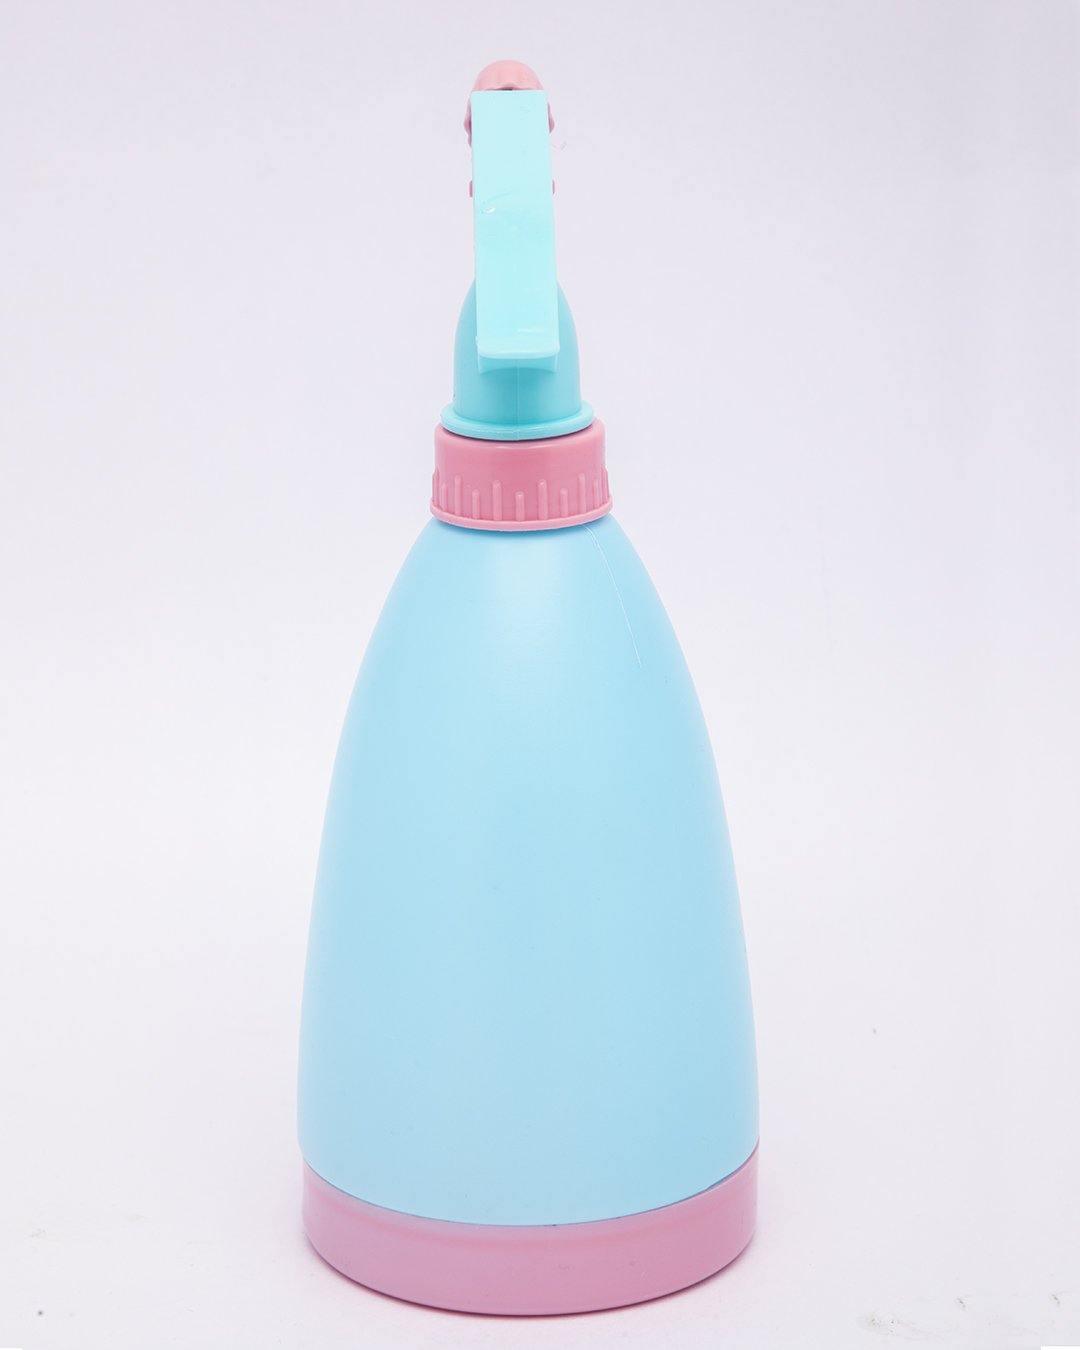 Spray Bottle, Blue, Plastic, Set of 2, 500 mL - MARKET 99